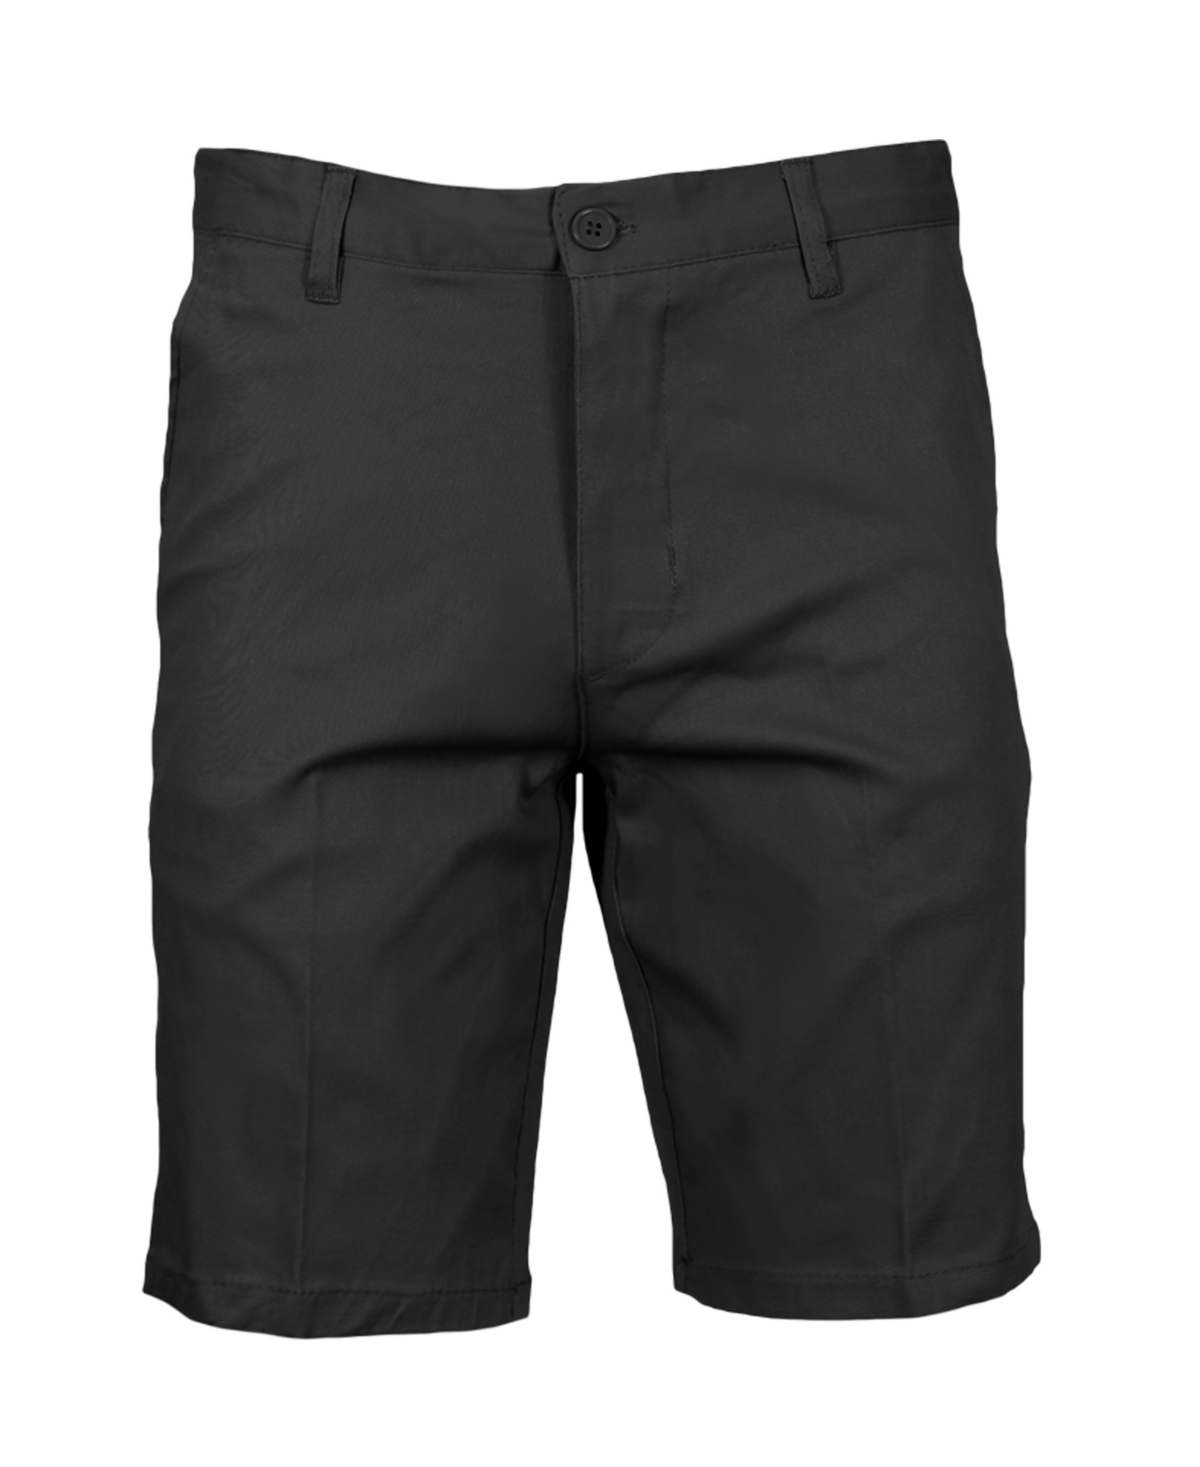 Men's Slim Fitting Cotton Flex Stretch Chino Shorts - Navy